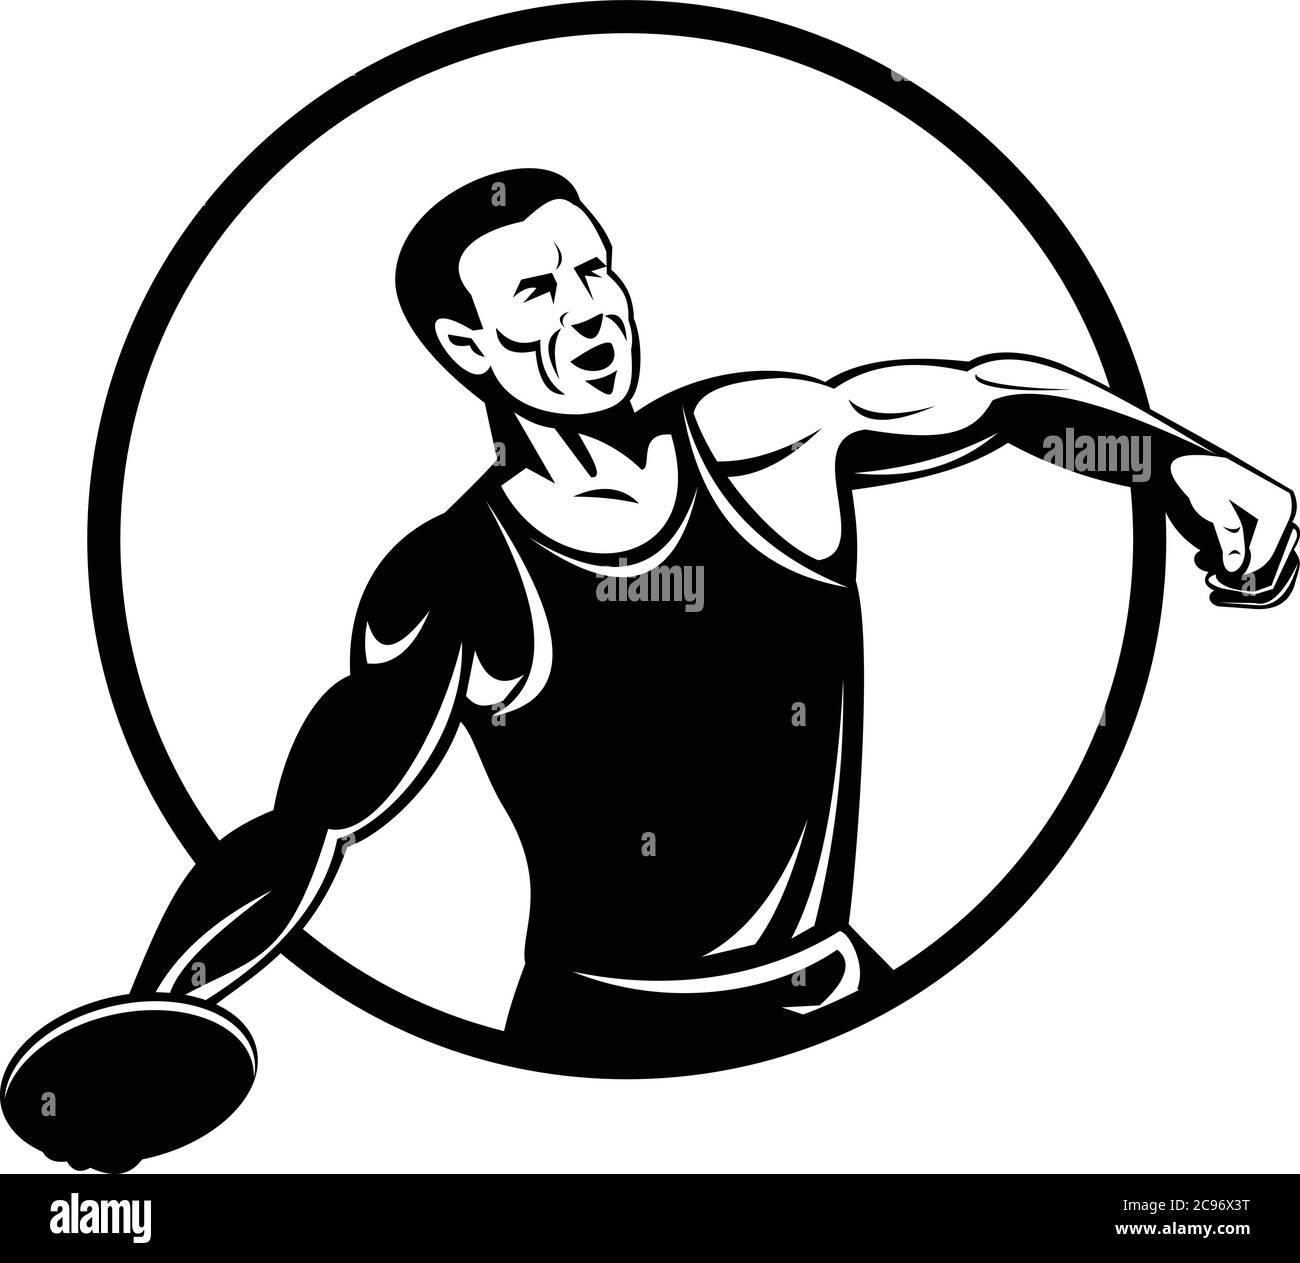 Retro-Stil Illustration eines Diskus werfen oder Scheibe werfen, ein Track-and-Field-Event, bei dem ein Athlet wirft eine schwere Scheibe, im Kreis auf Isolat gesetzt Stock Vektor